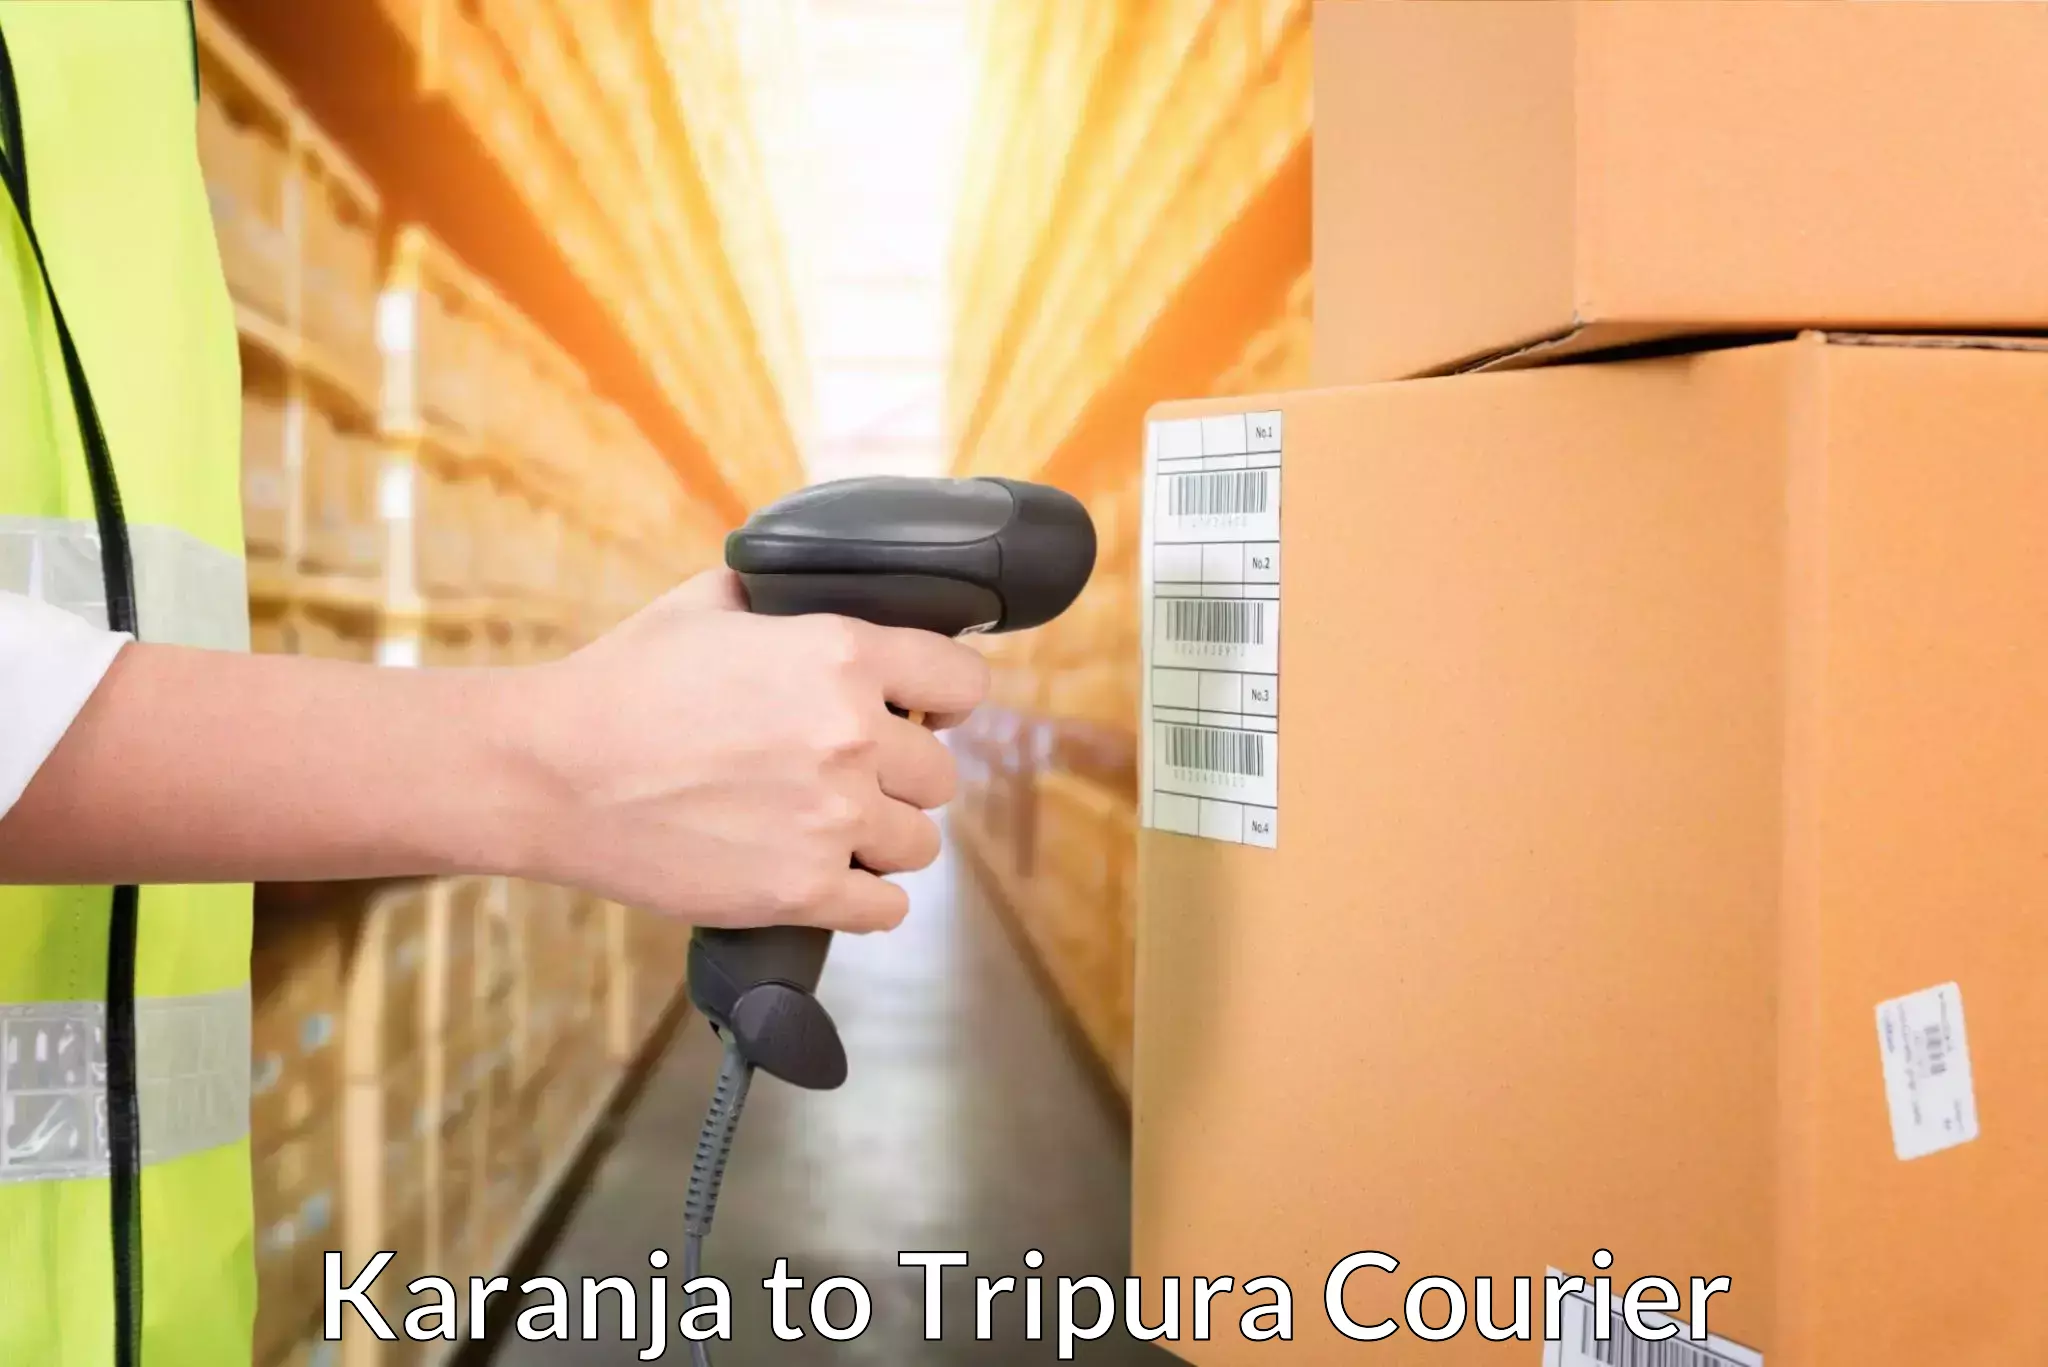 Flexible delivery scheduling in Karanja to Kamalpur